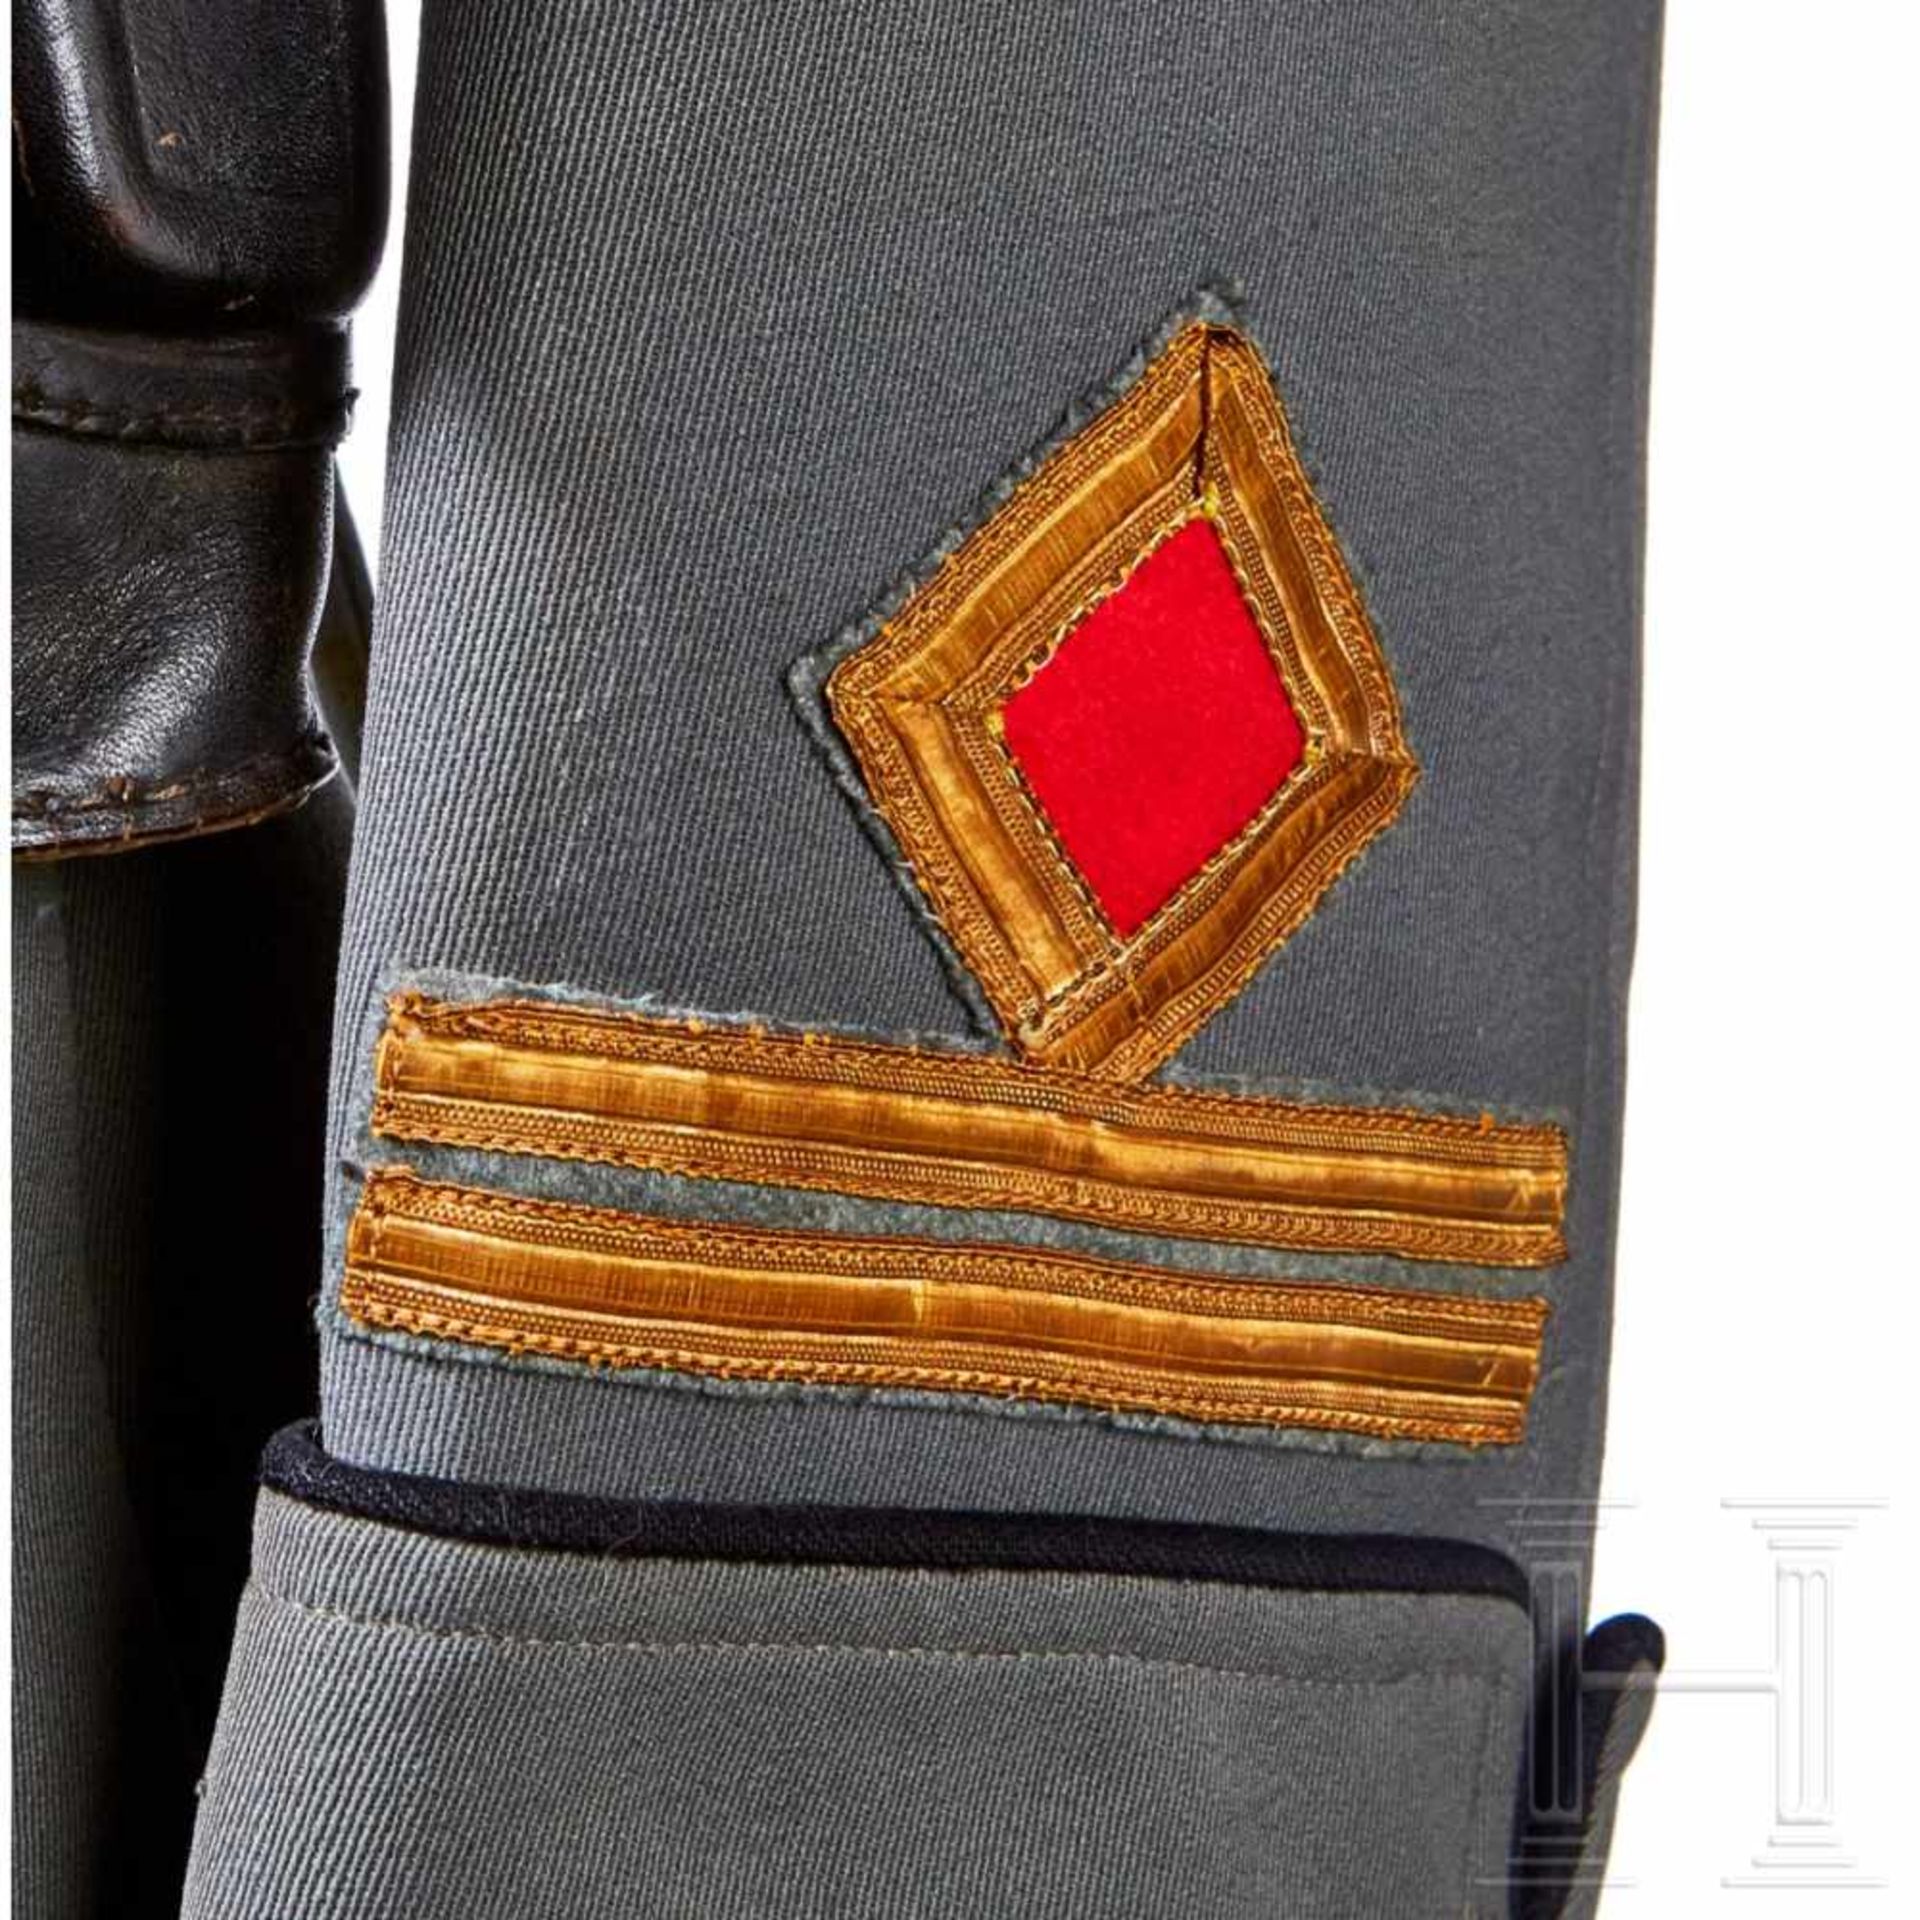 Service Tunic for an MVSN OberleutnantFine field-grey gabardine wool with pleated patch pockets - Bild 6 aus 9